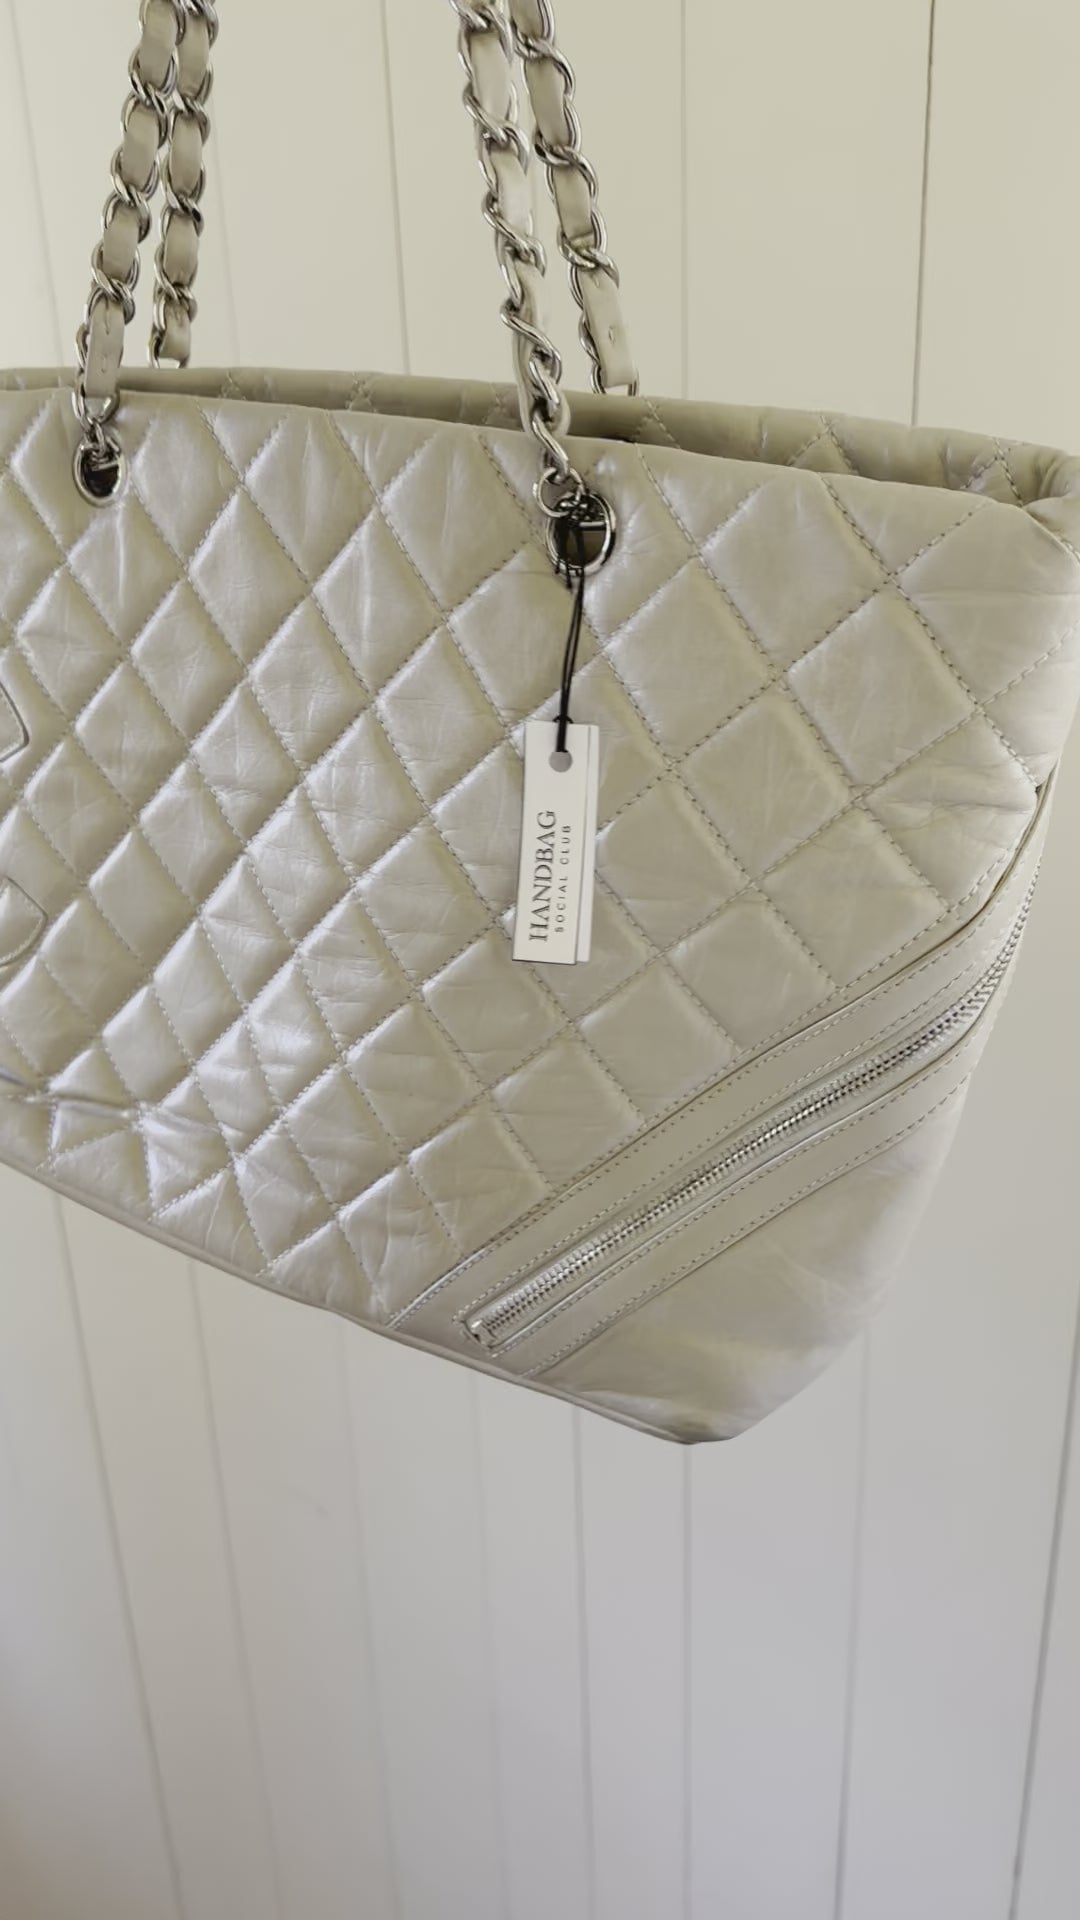 Chanel Cotton Club Tote - White Totes, Handbags - CHA947312